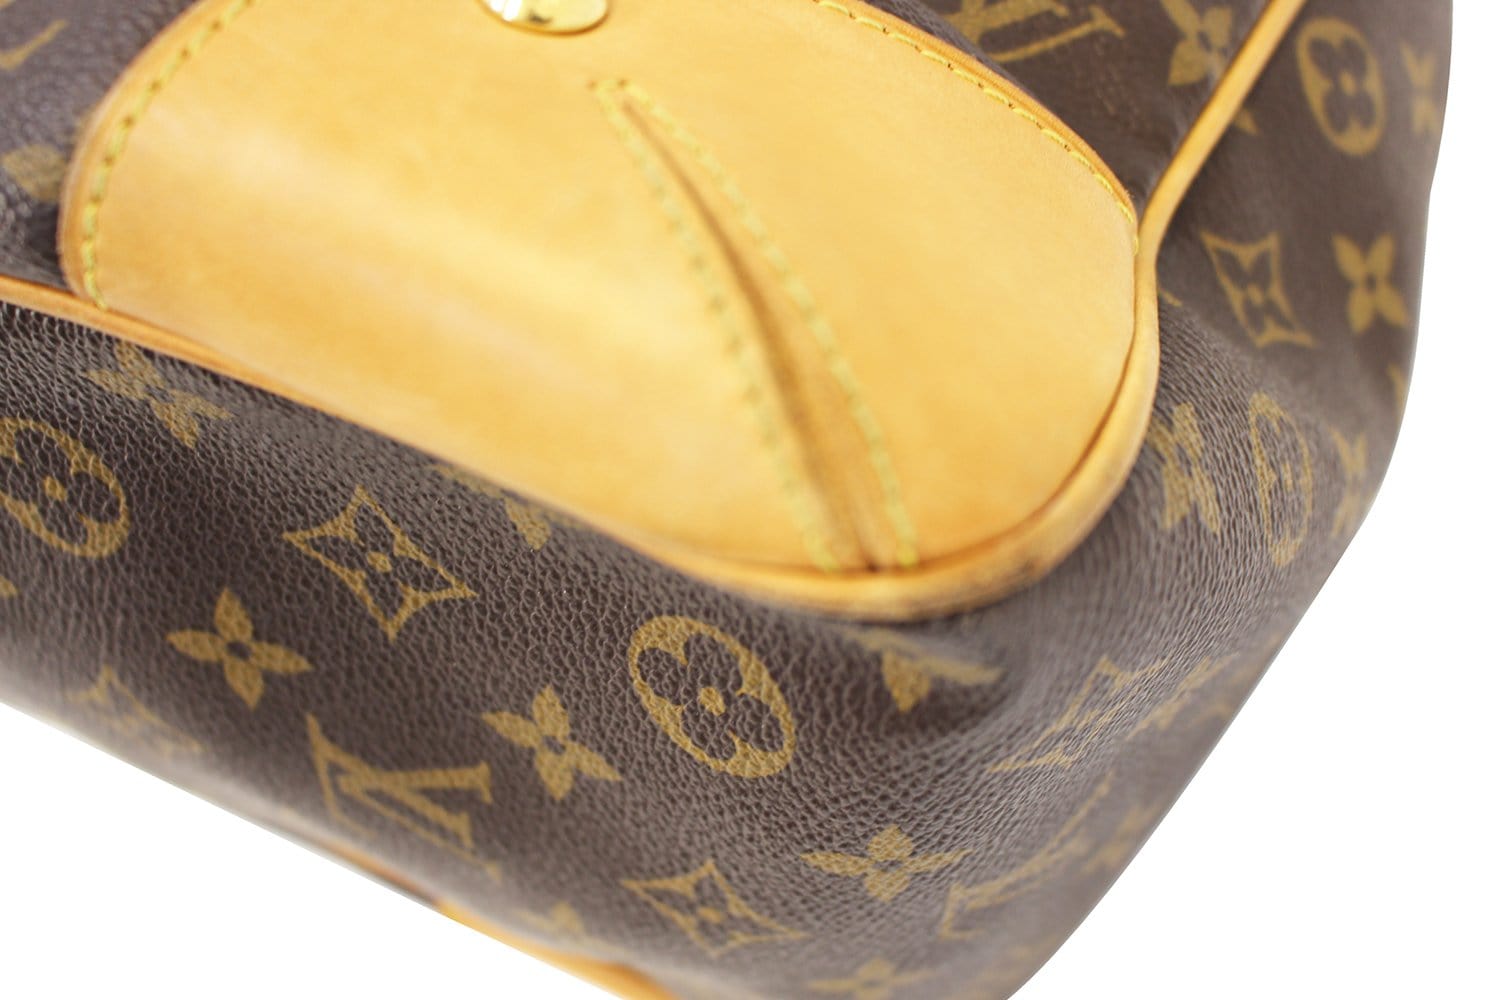 Louis Vuitton, Bags, Hold0 Authentic Louis Vuitton Estrela Mm